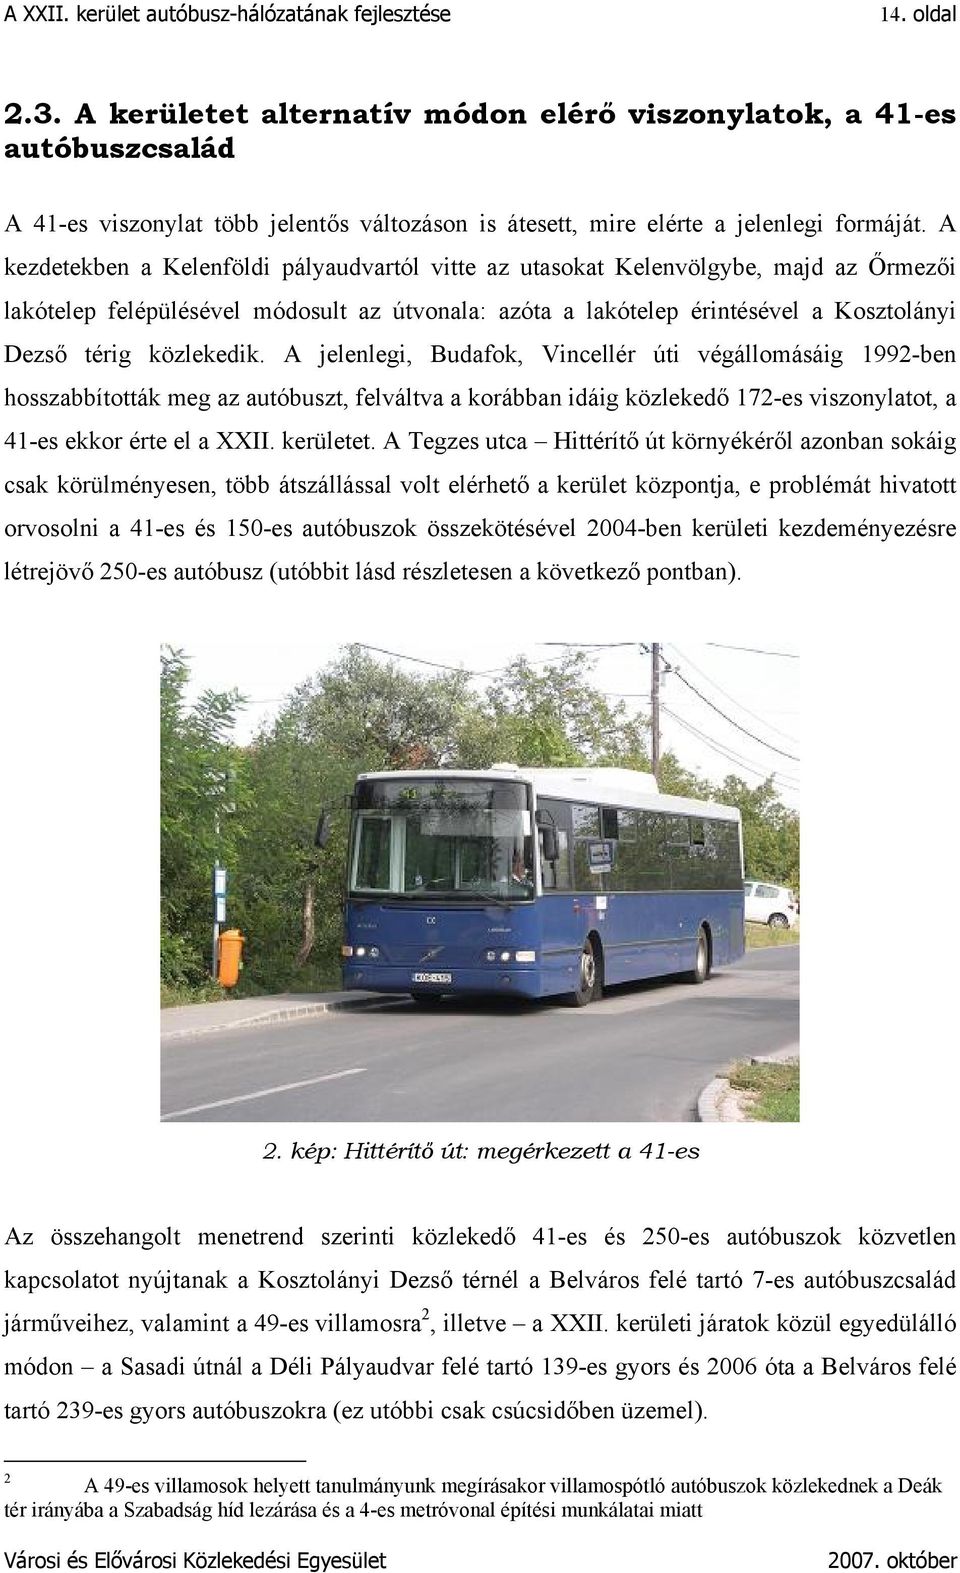 közlekedik. A jelenlegi, Budafok, Vincellér úti végállomásáig 1992-ben hosszabbították meg az autóbuszt, felváltva a korábban idáig közlekedő 172-es viszonylatot, a 41-es ekkor érte el a XXII.